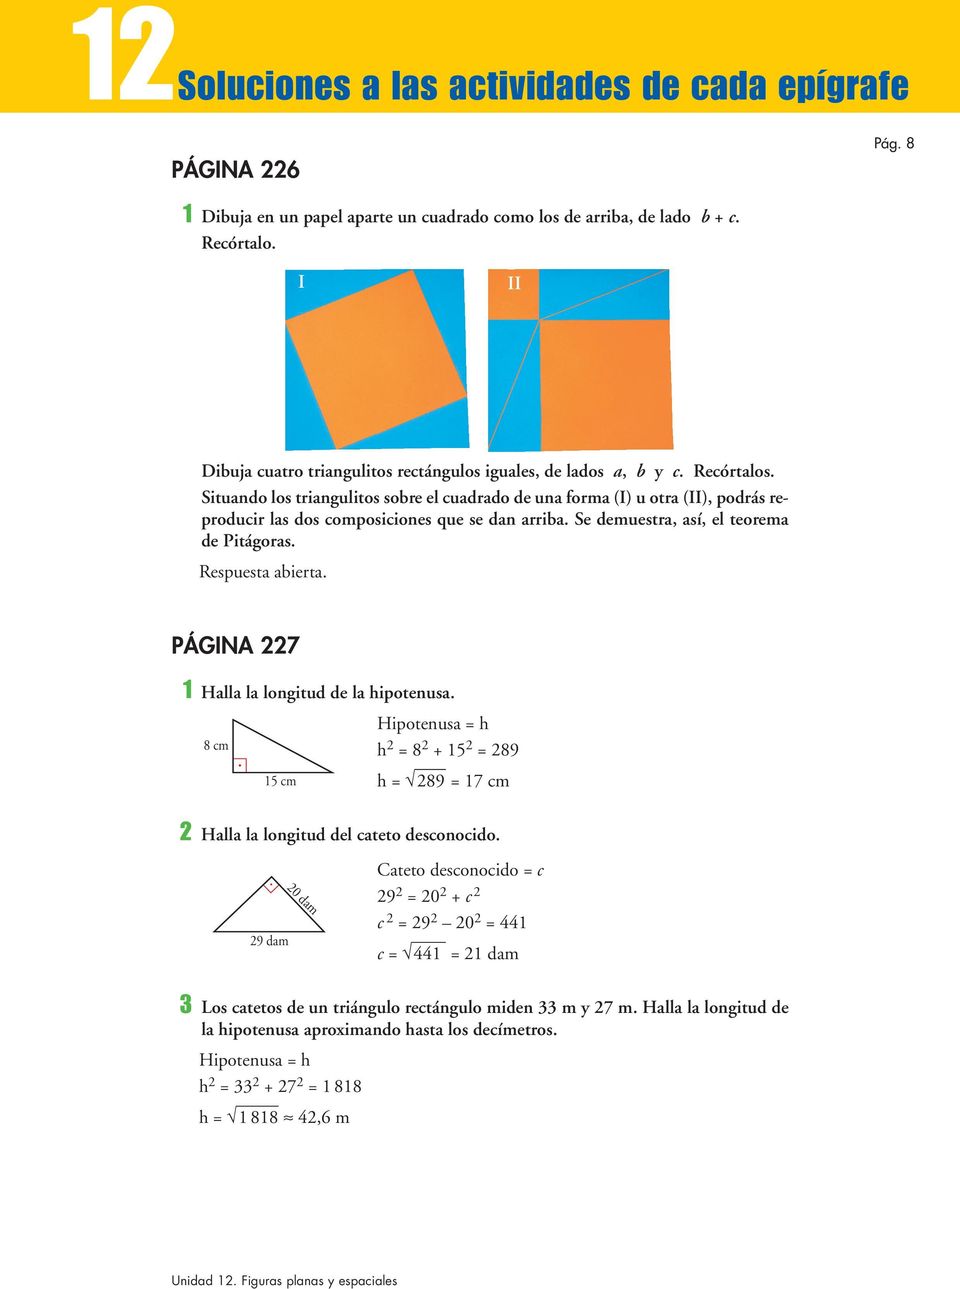 Situando los triangulitos sobre el cuadrado de una forma (I) u otra (II), podrás reproducir las dos composiciones que se dan arriba. Se demuestra, así, el teorema de Pitágoras. Respuesta abierta.